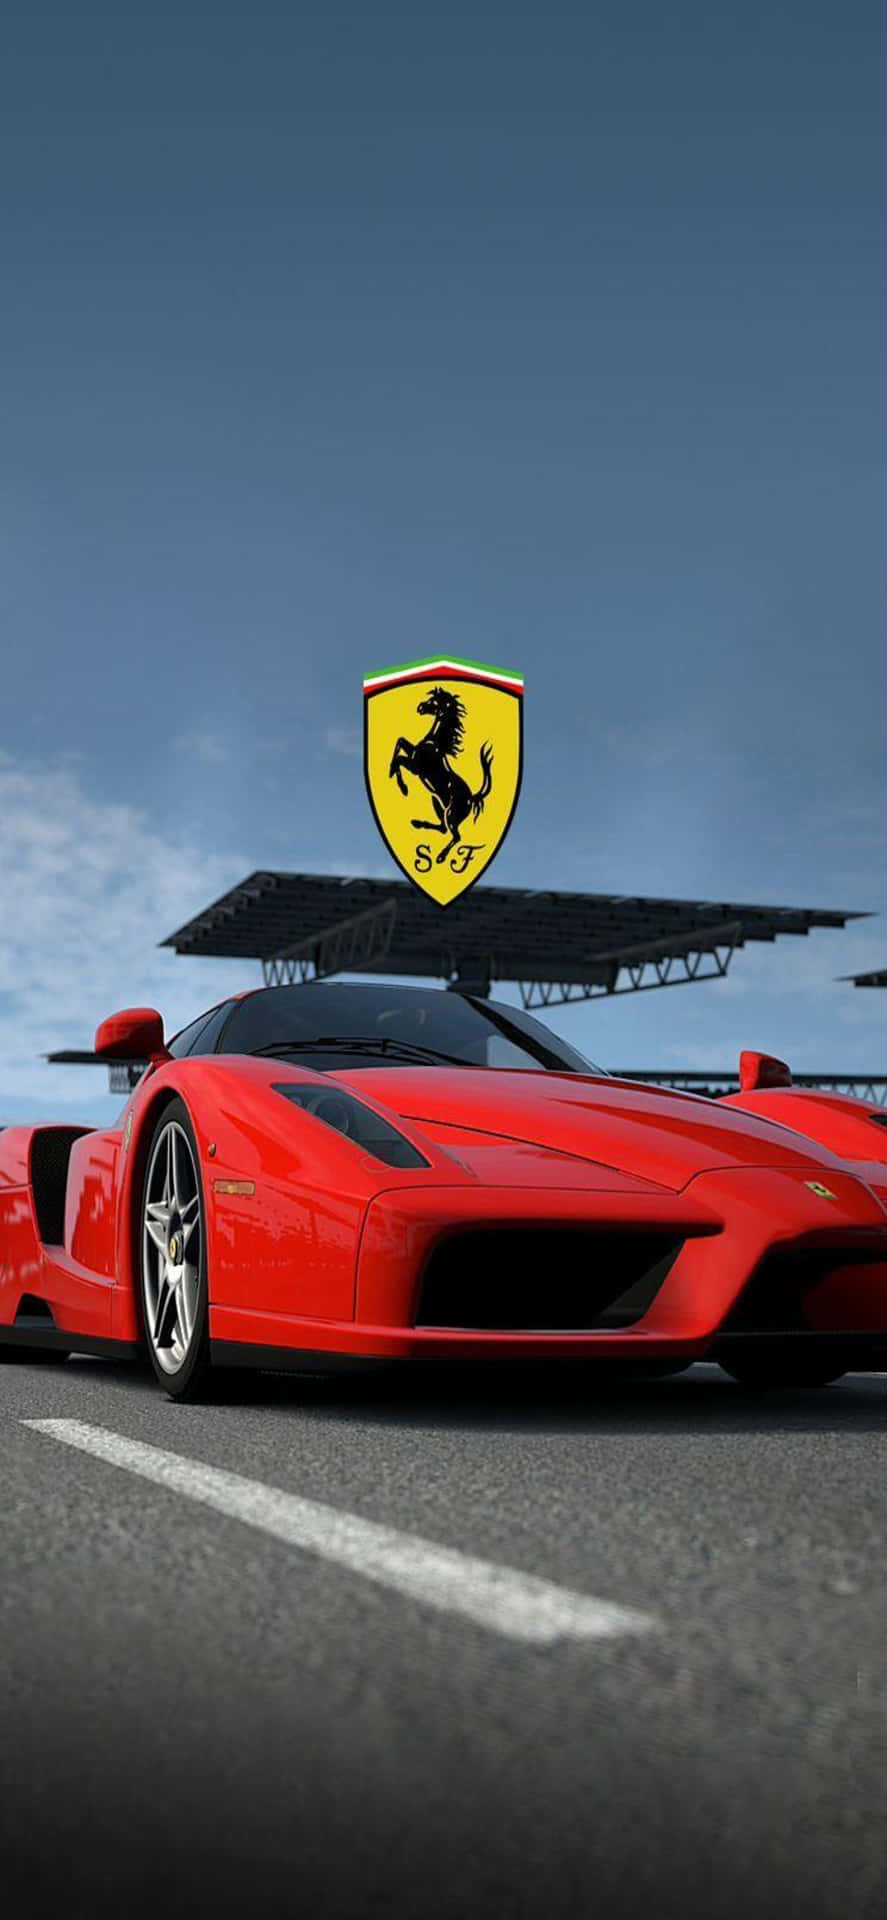 Iphonexs Max Ferrari Bakgrund, Röd Ferrari Enzo Med Logotyp.